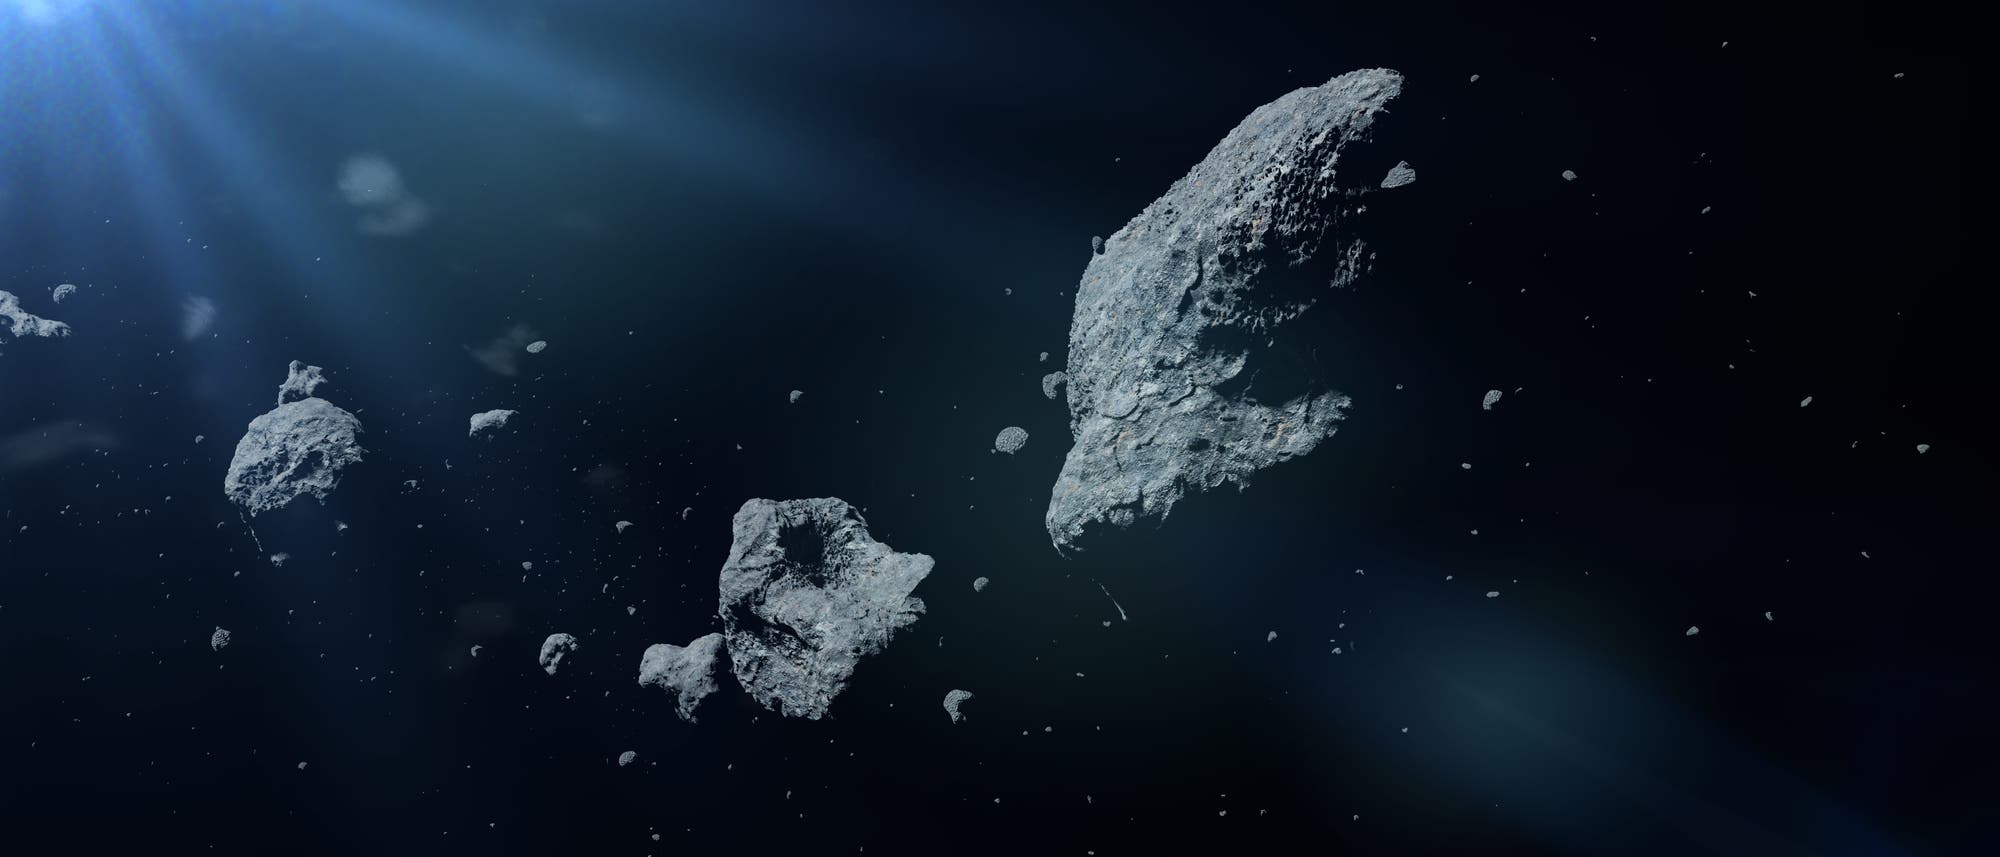 Asteroiden im Sonnenlicht.